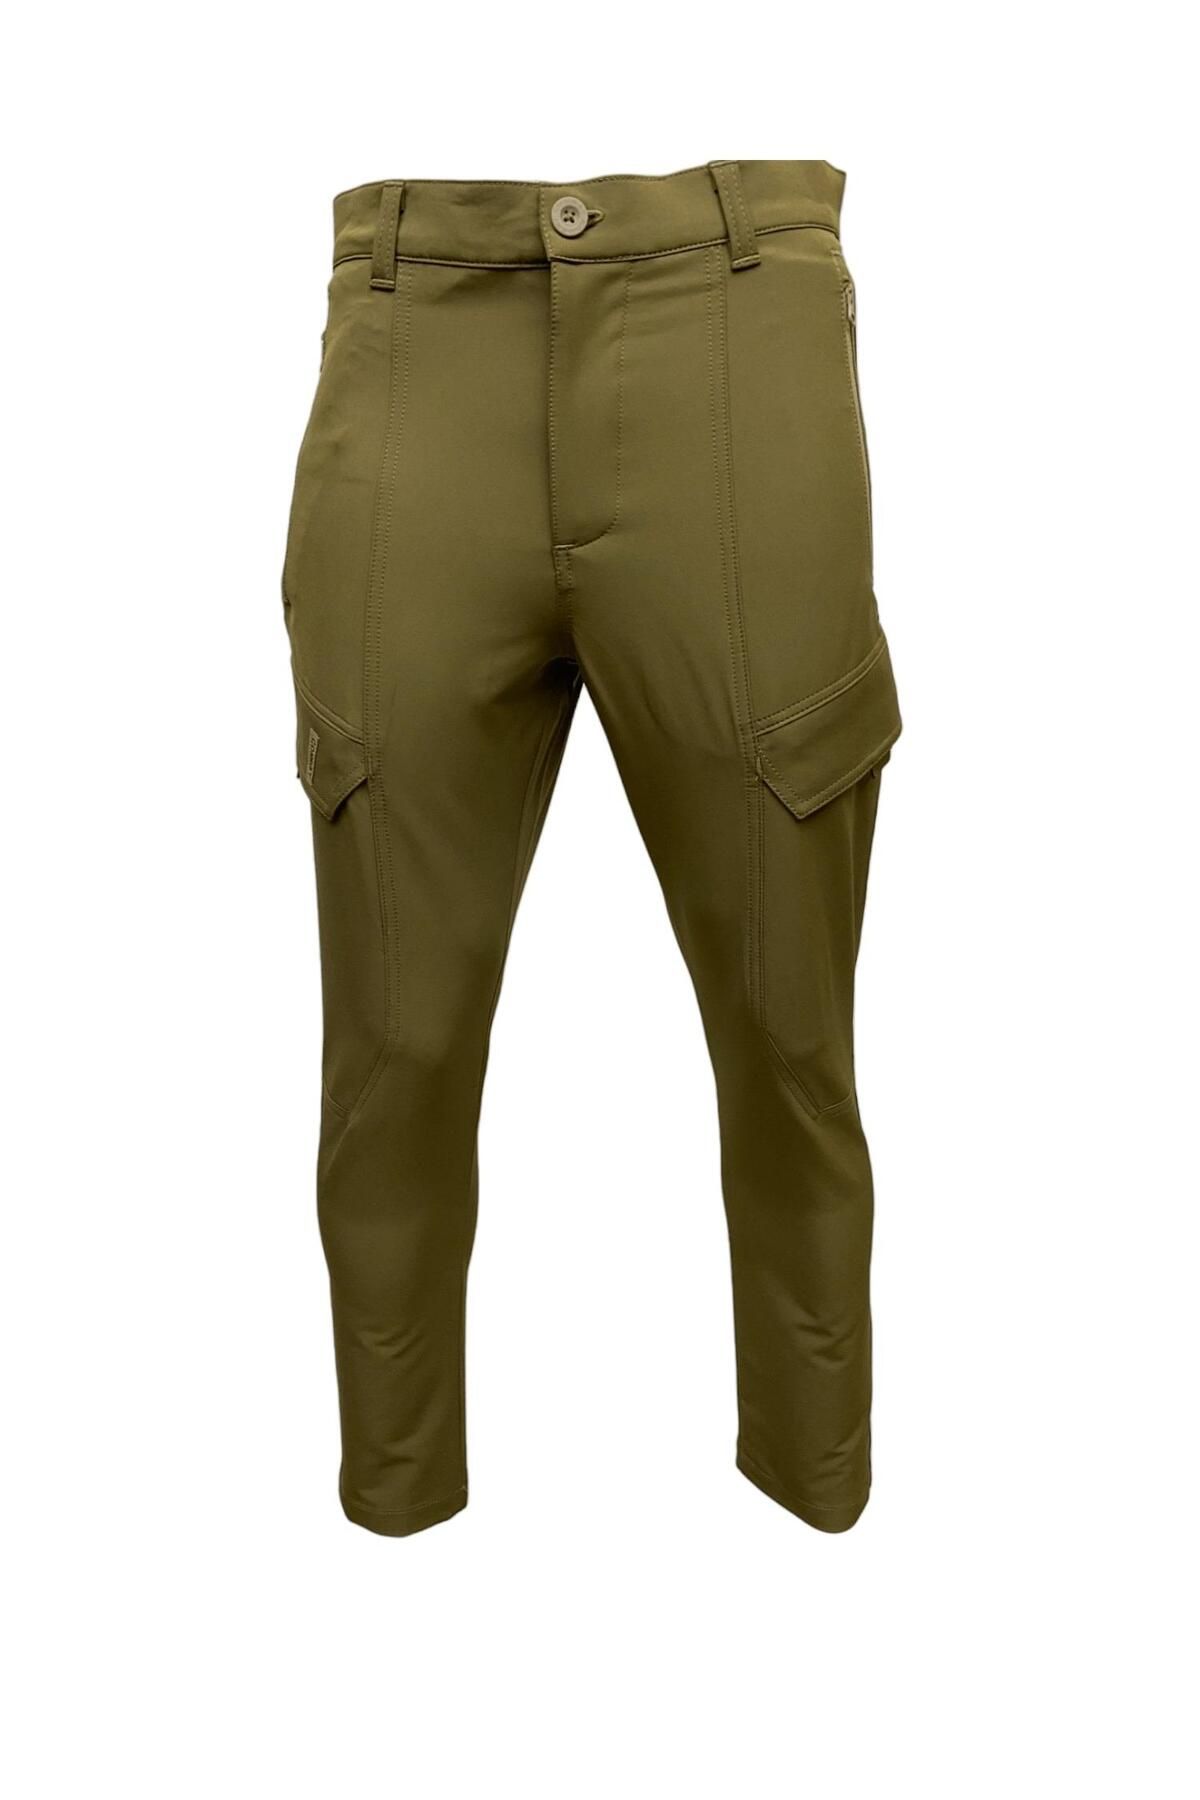 Combat Tactical Pantolon Hıkıng - 521 - N21